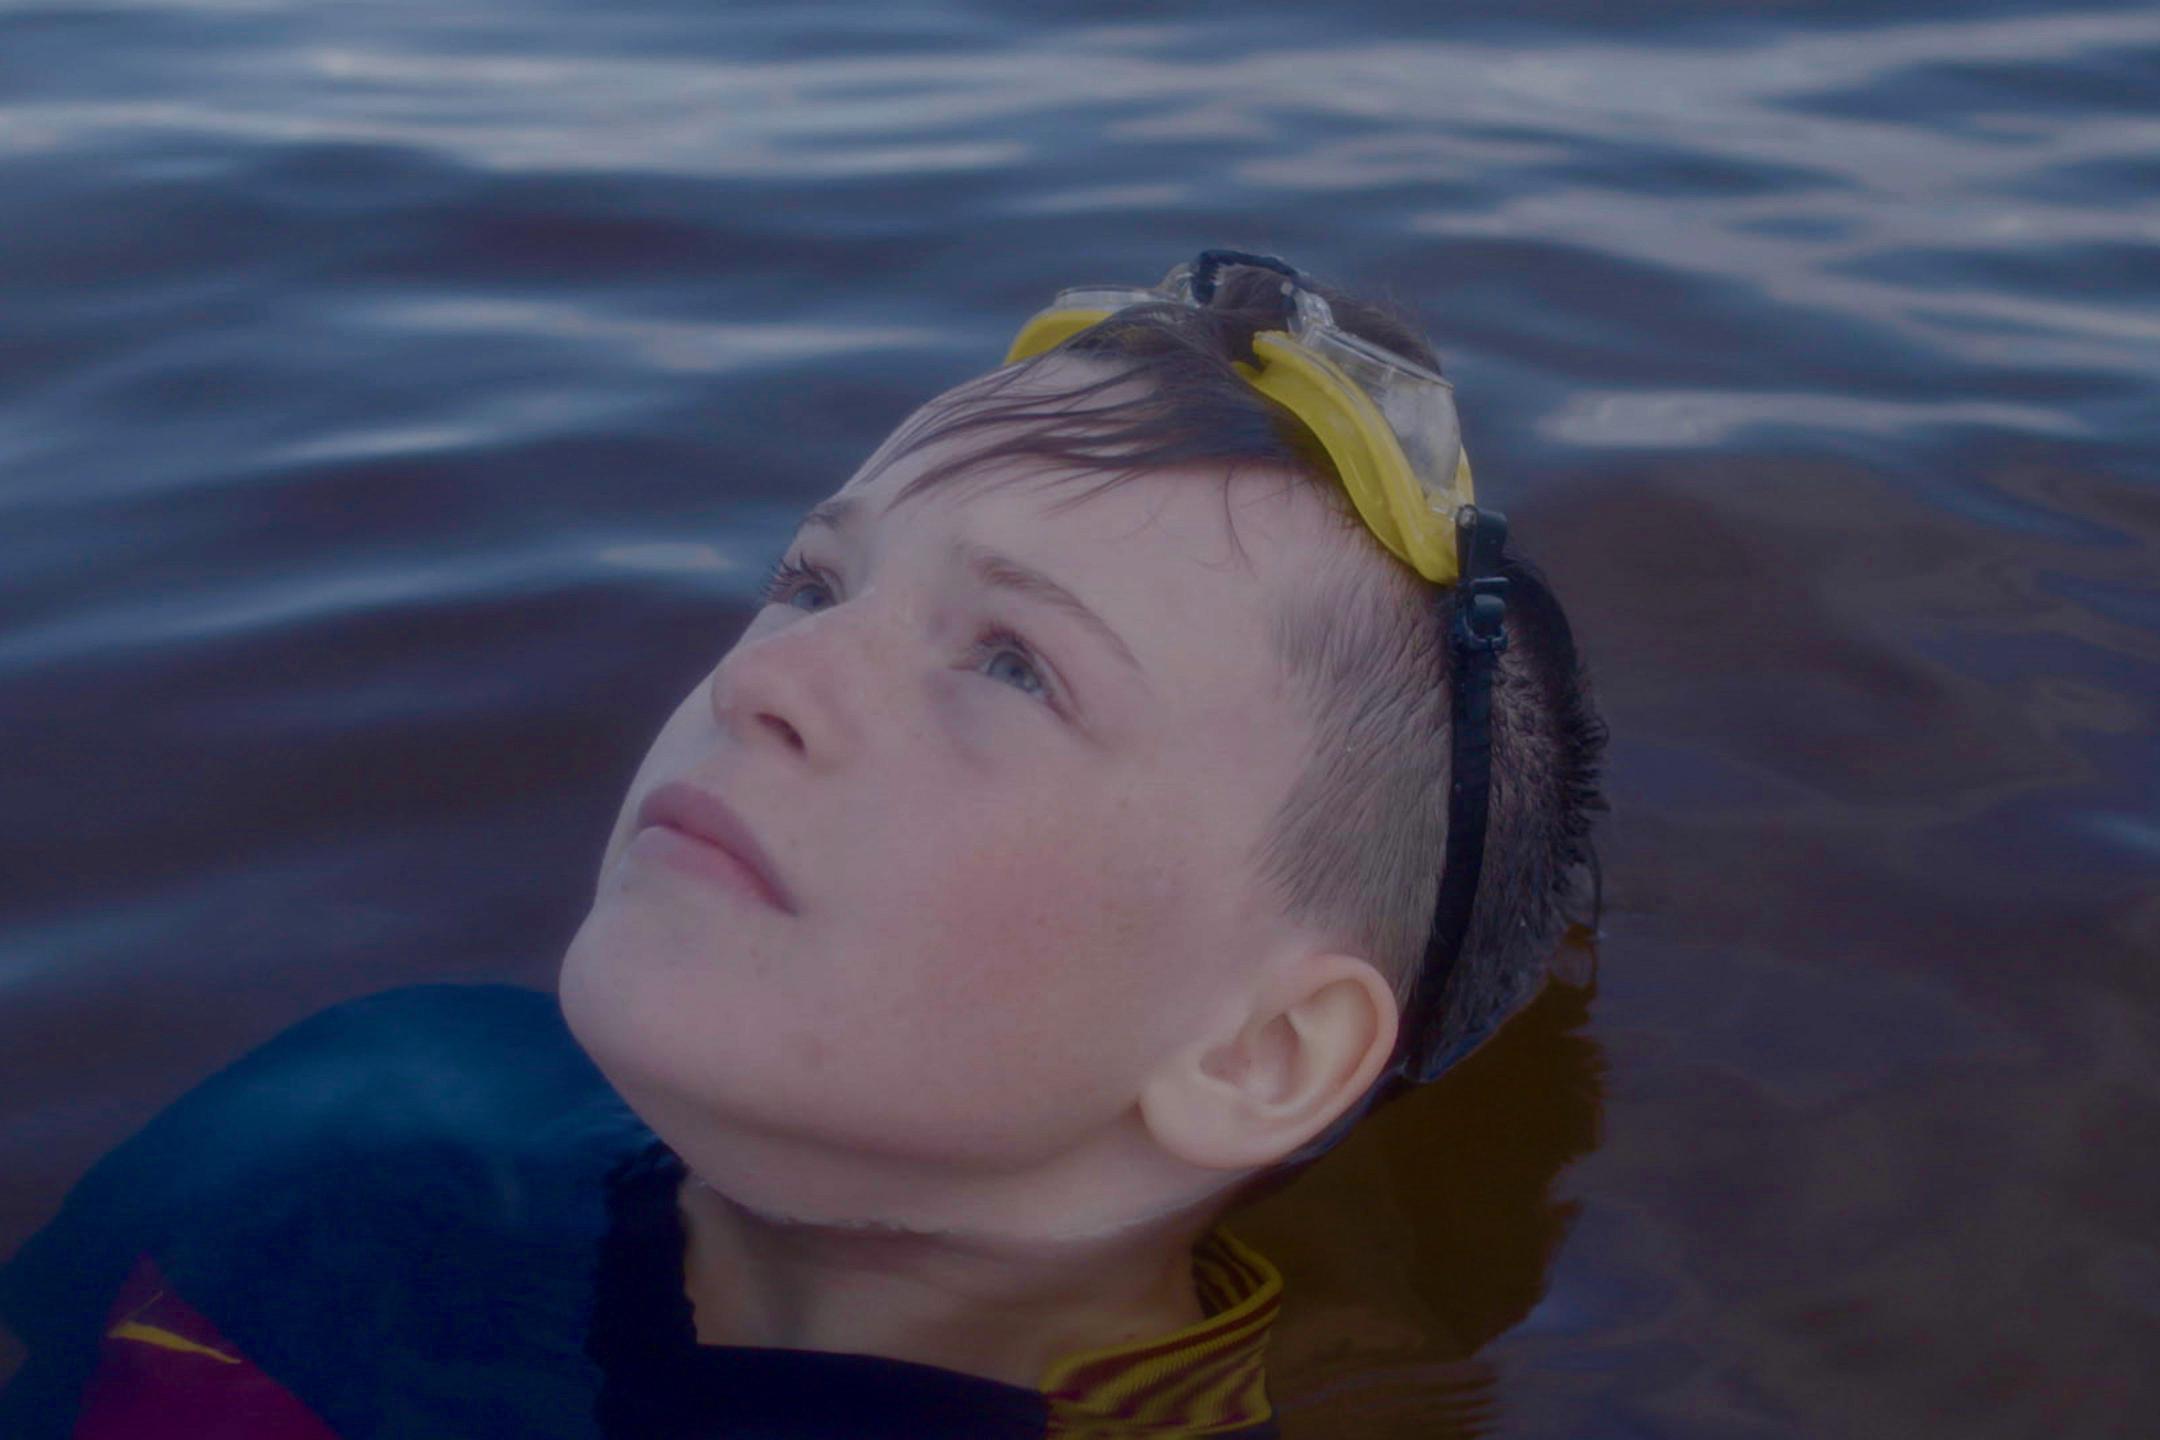 Filmstill aus "Gabi": Ein Junge mit Schwimmbrille auf dem Kopf liegt im Wasser und blickt in den Himmel.